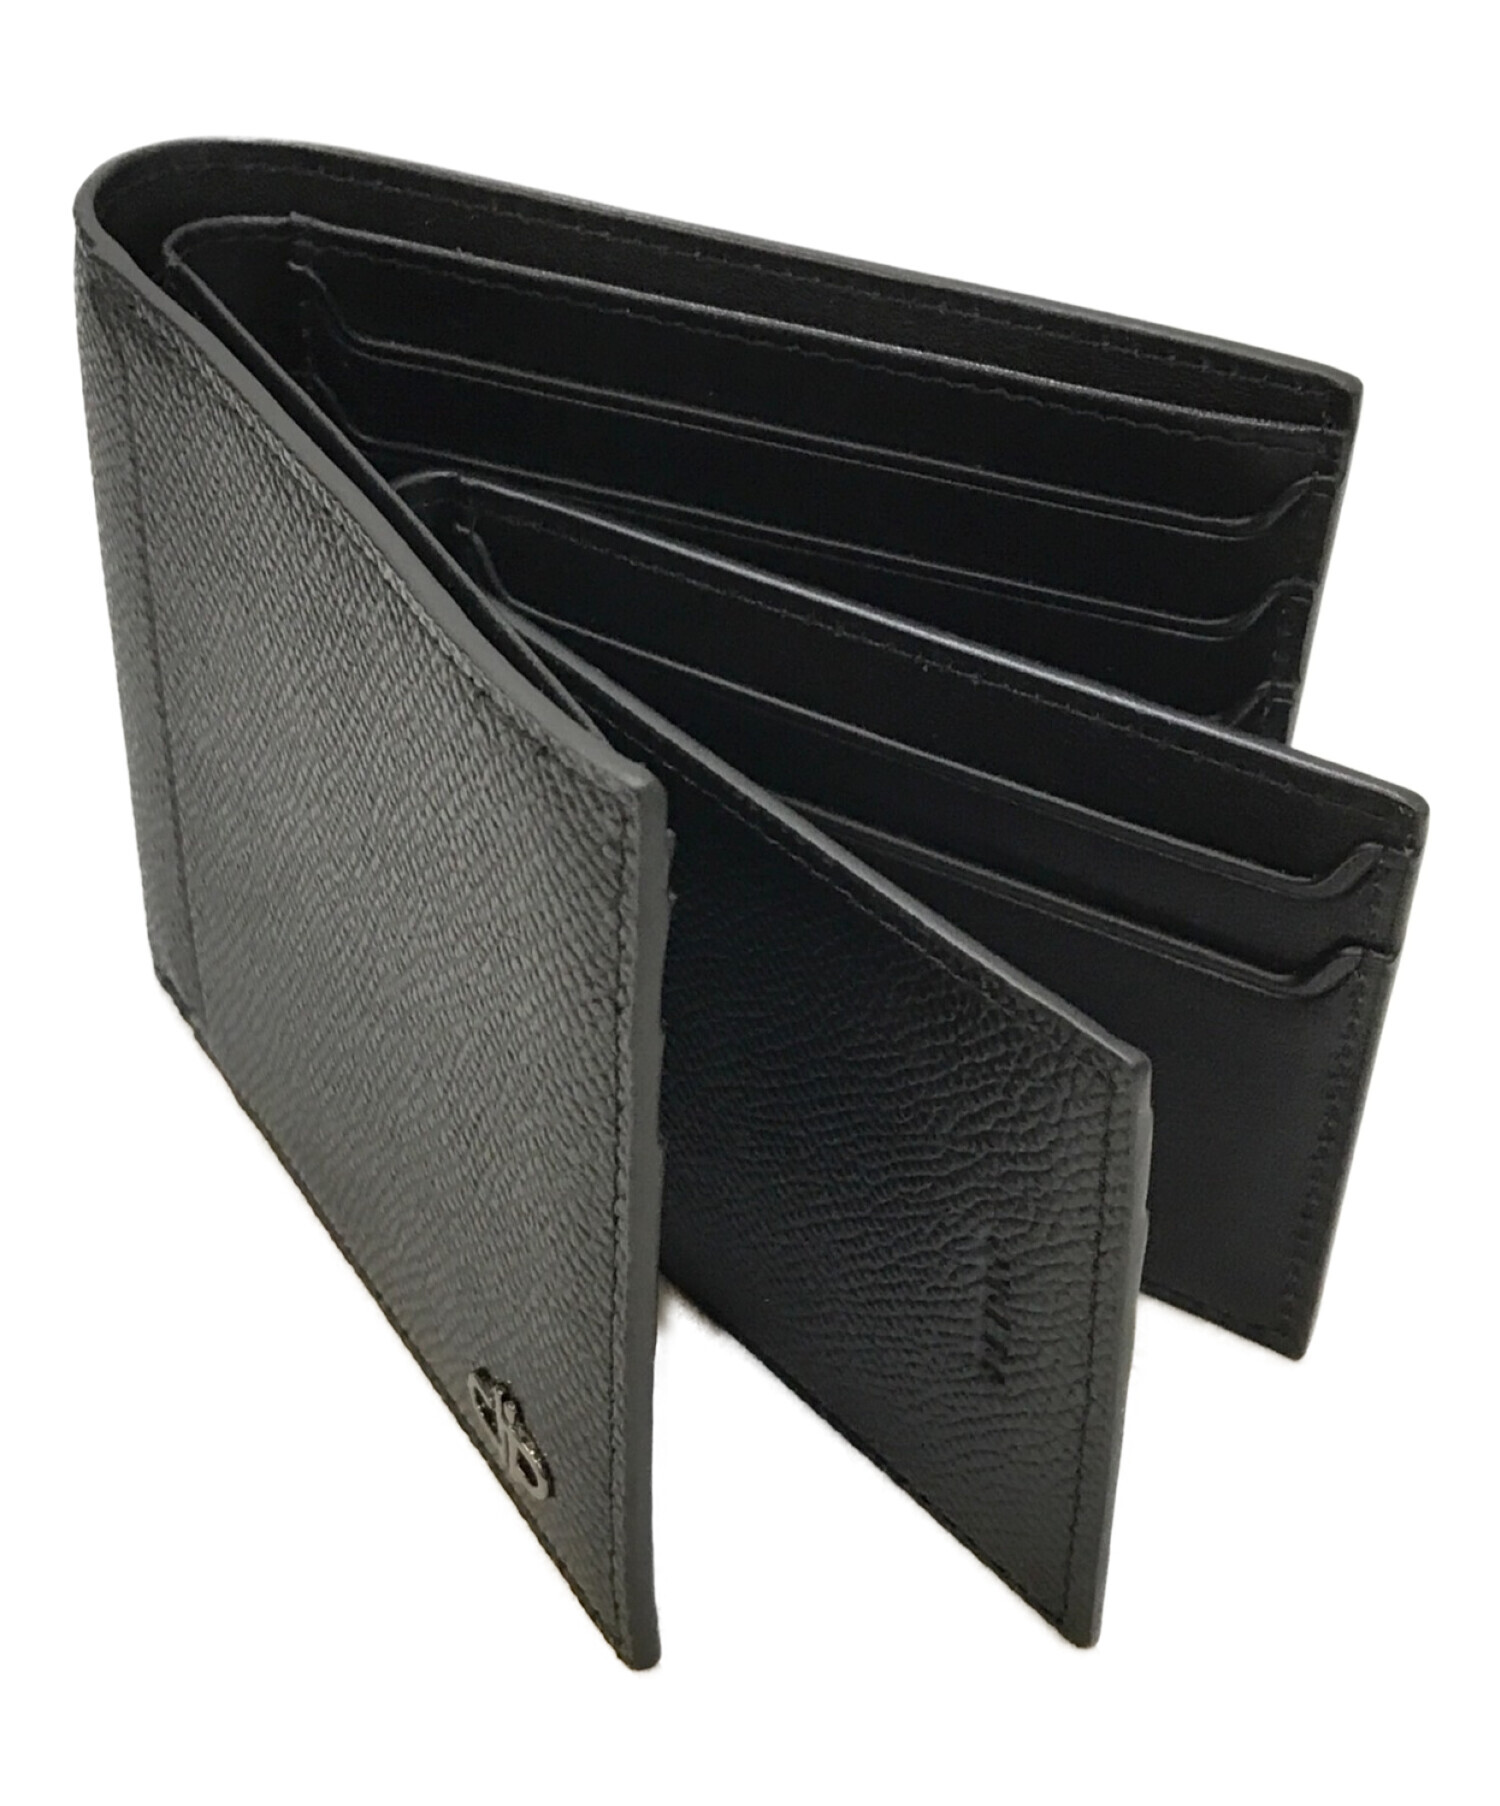 PEDRO (ペドロ) Icon Leather Bi-Fold Wallet with Insert ブラック サイズ:下記参照